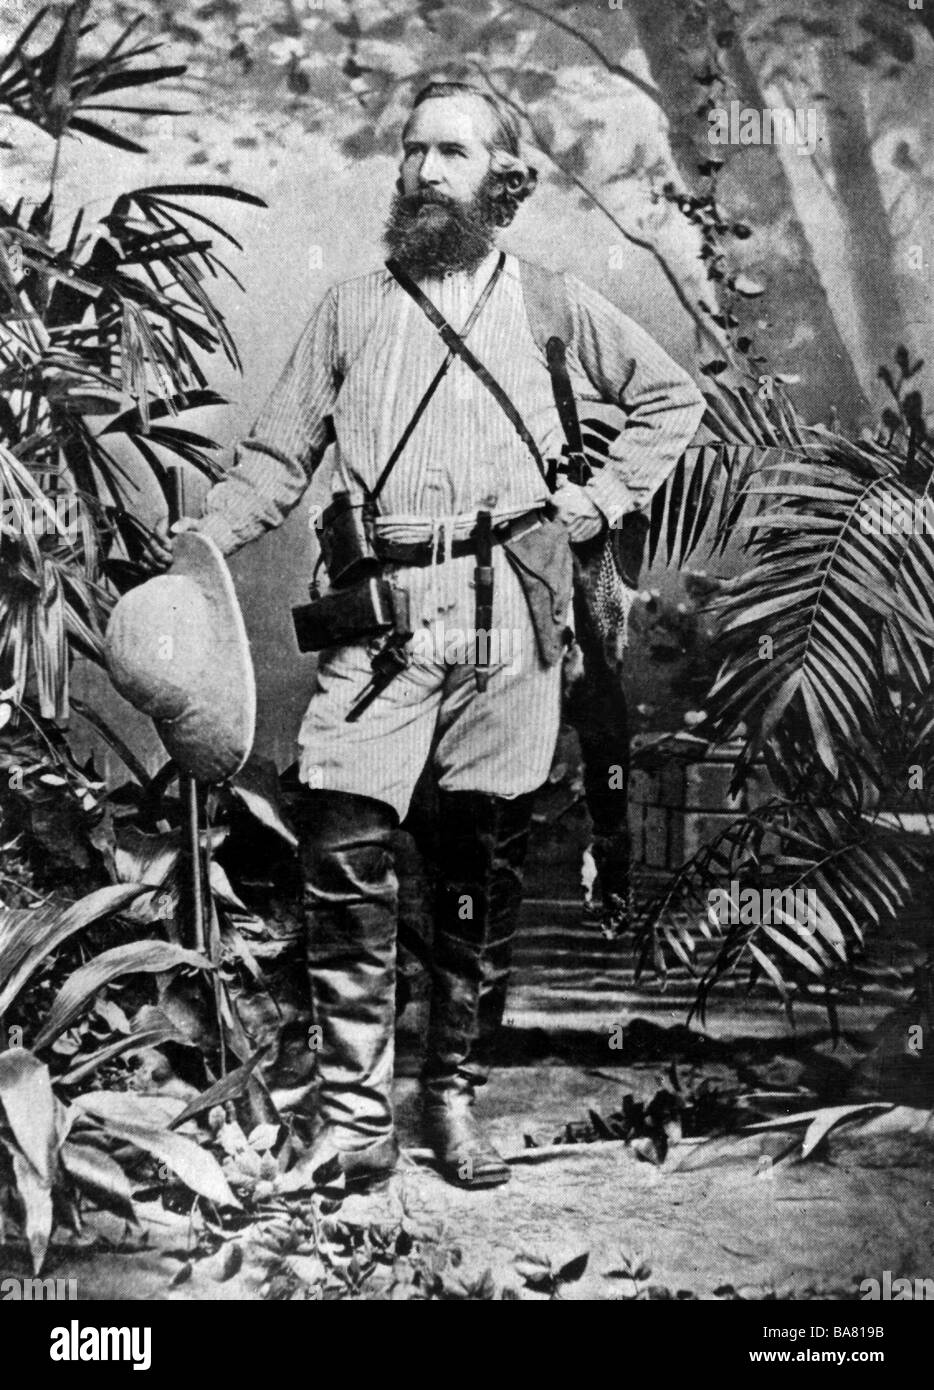 Haeckel, Ernst, 16.2.1834 - 9.8.1919, deutscher Wissenschaftler, Ganzkörperansicht, in tropischen Anzug, 1882, Friedrich-Schiller-Universität Jena, Stockfoto